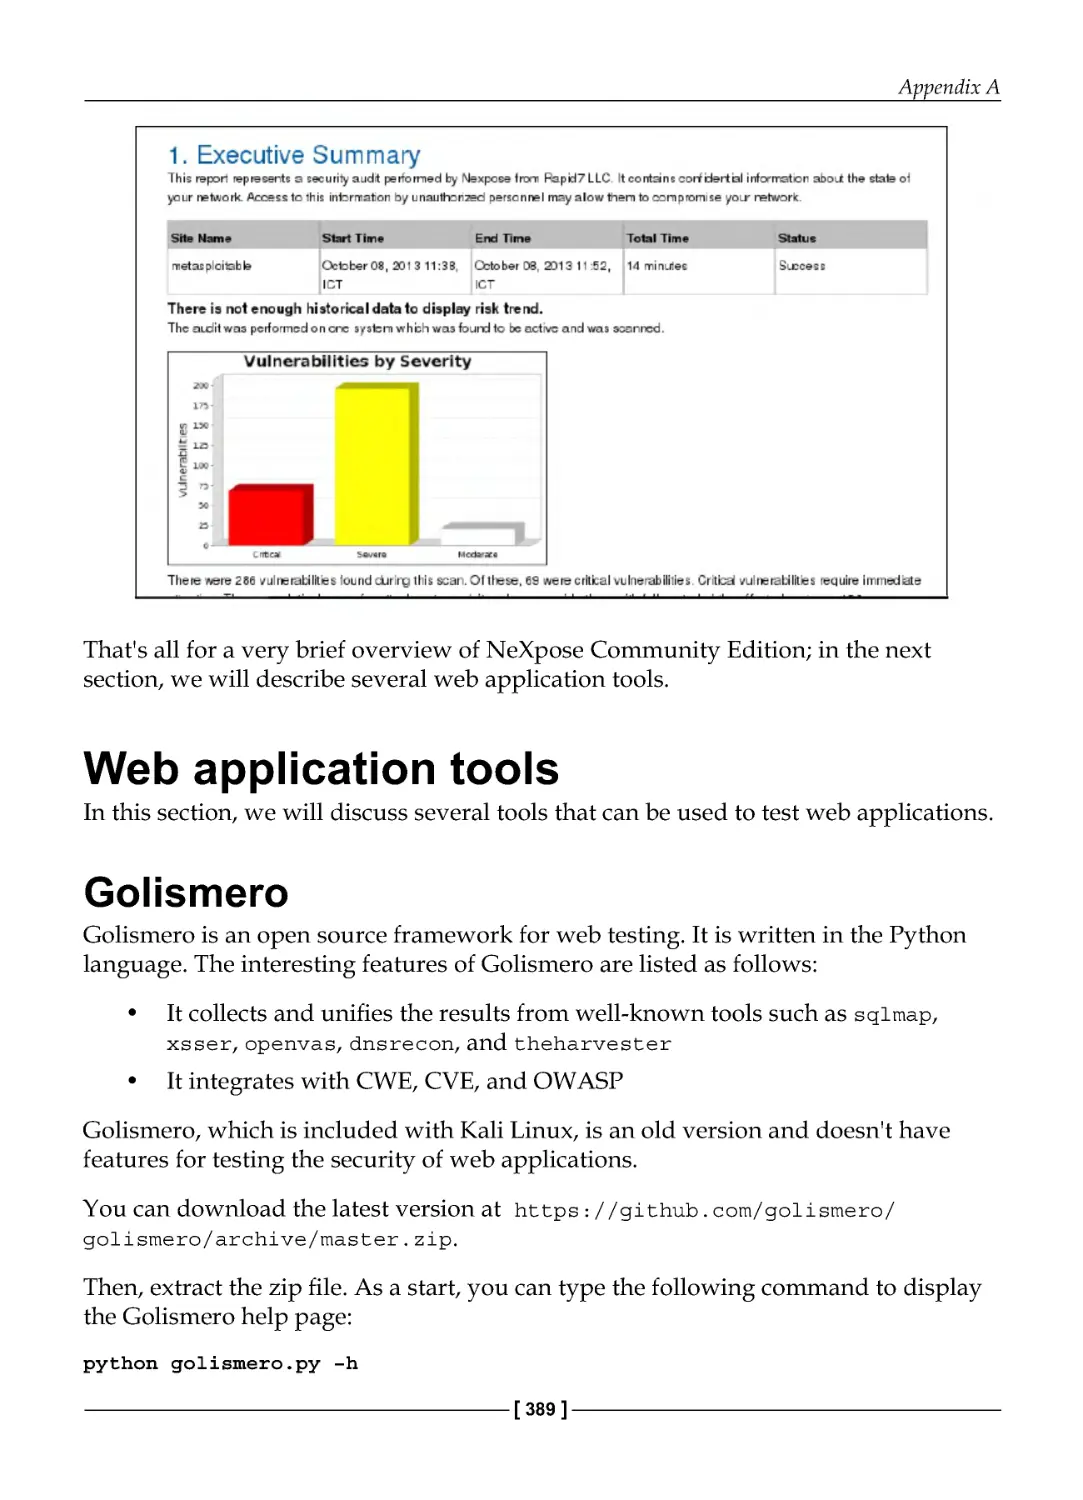 Web application tools